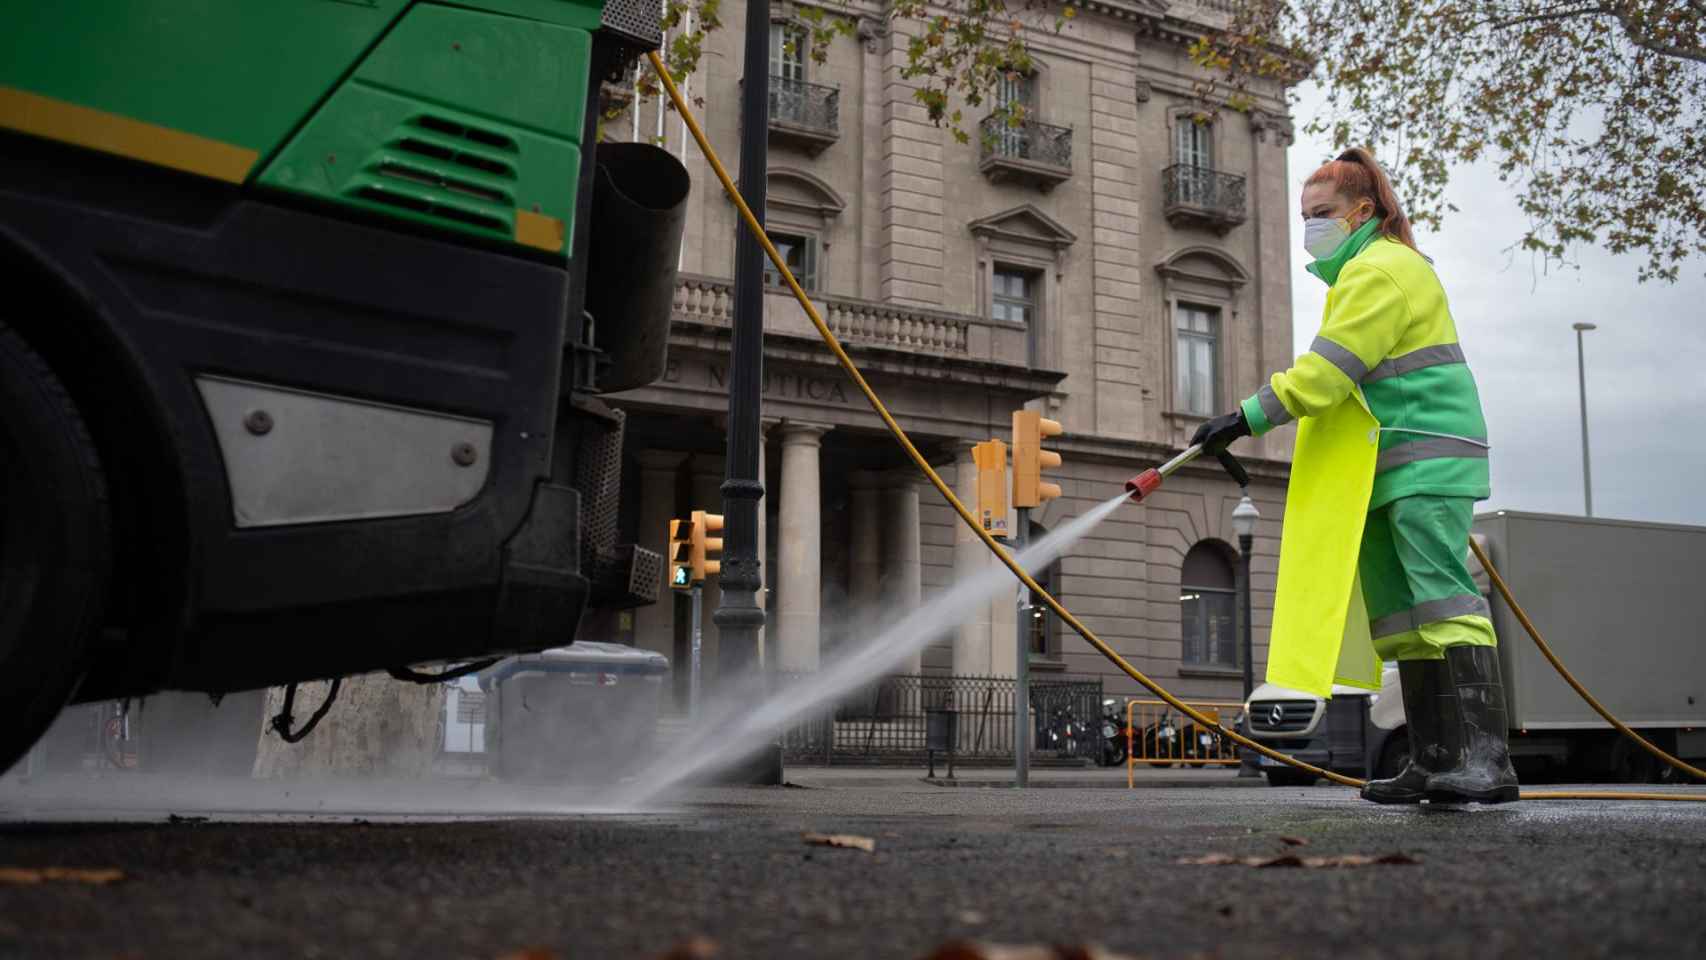 Una trabajadora riega una calle con una manguera en enero en Barcelona